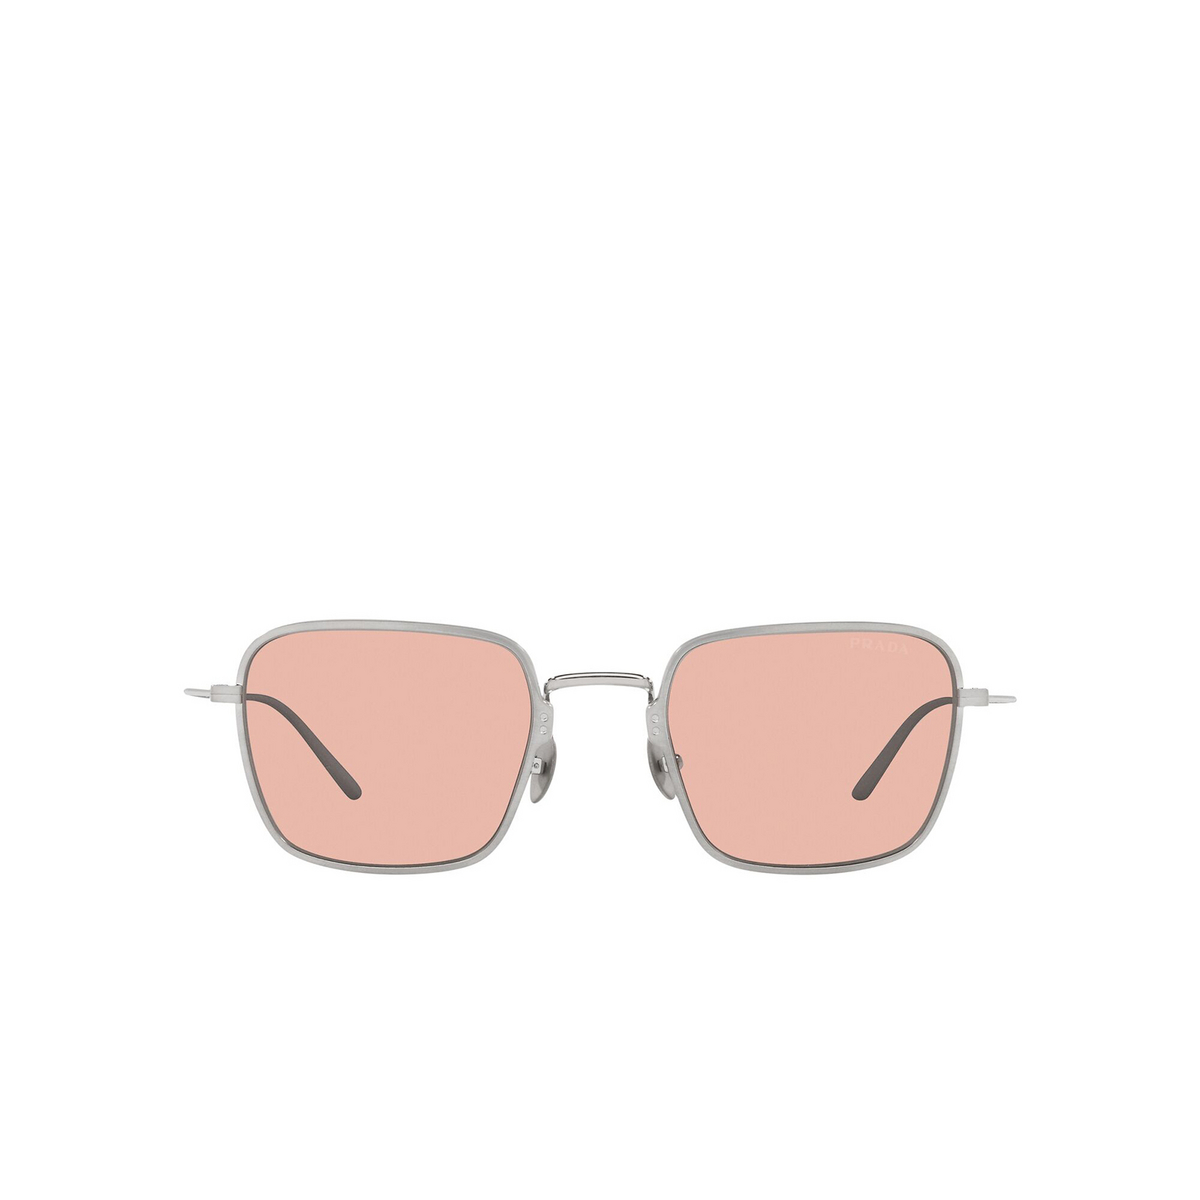 Prada® Square Sunglasses: PR 54WS color Satin Titanium 05Q03F - front view.